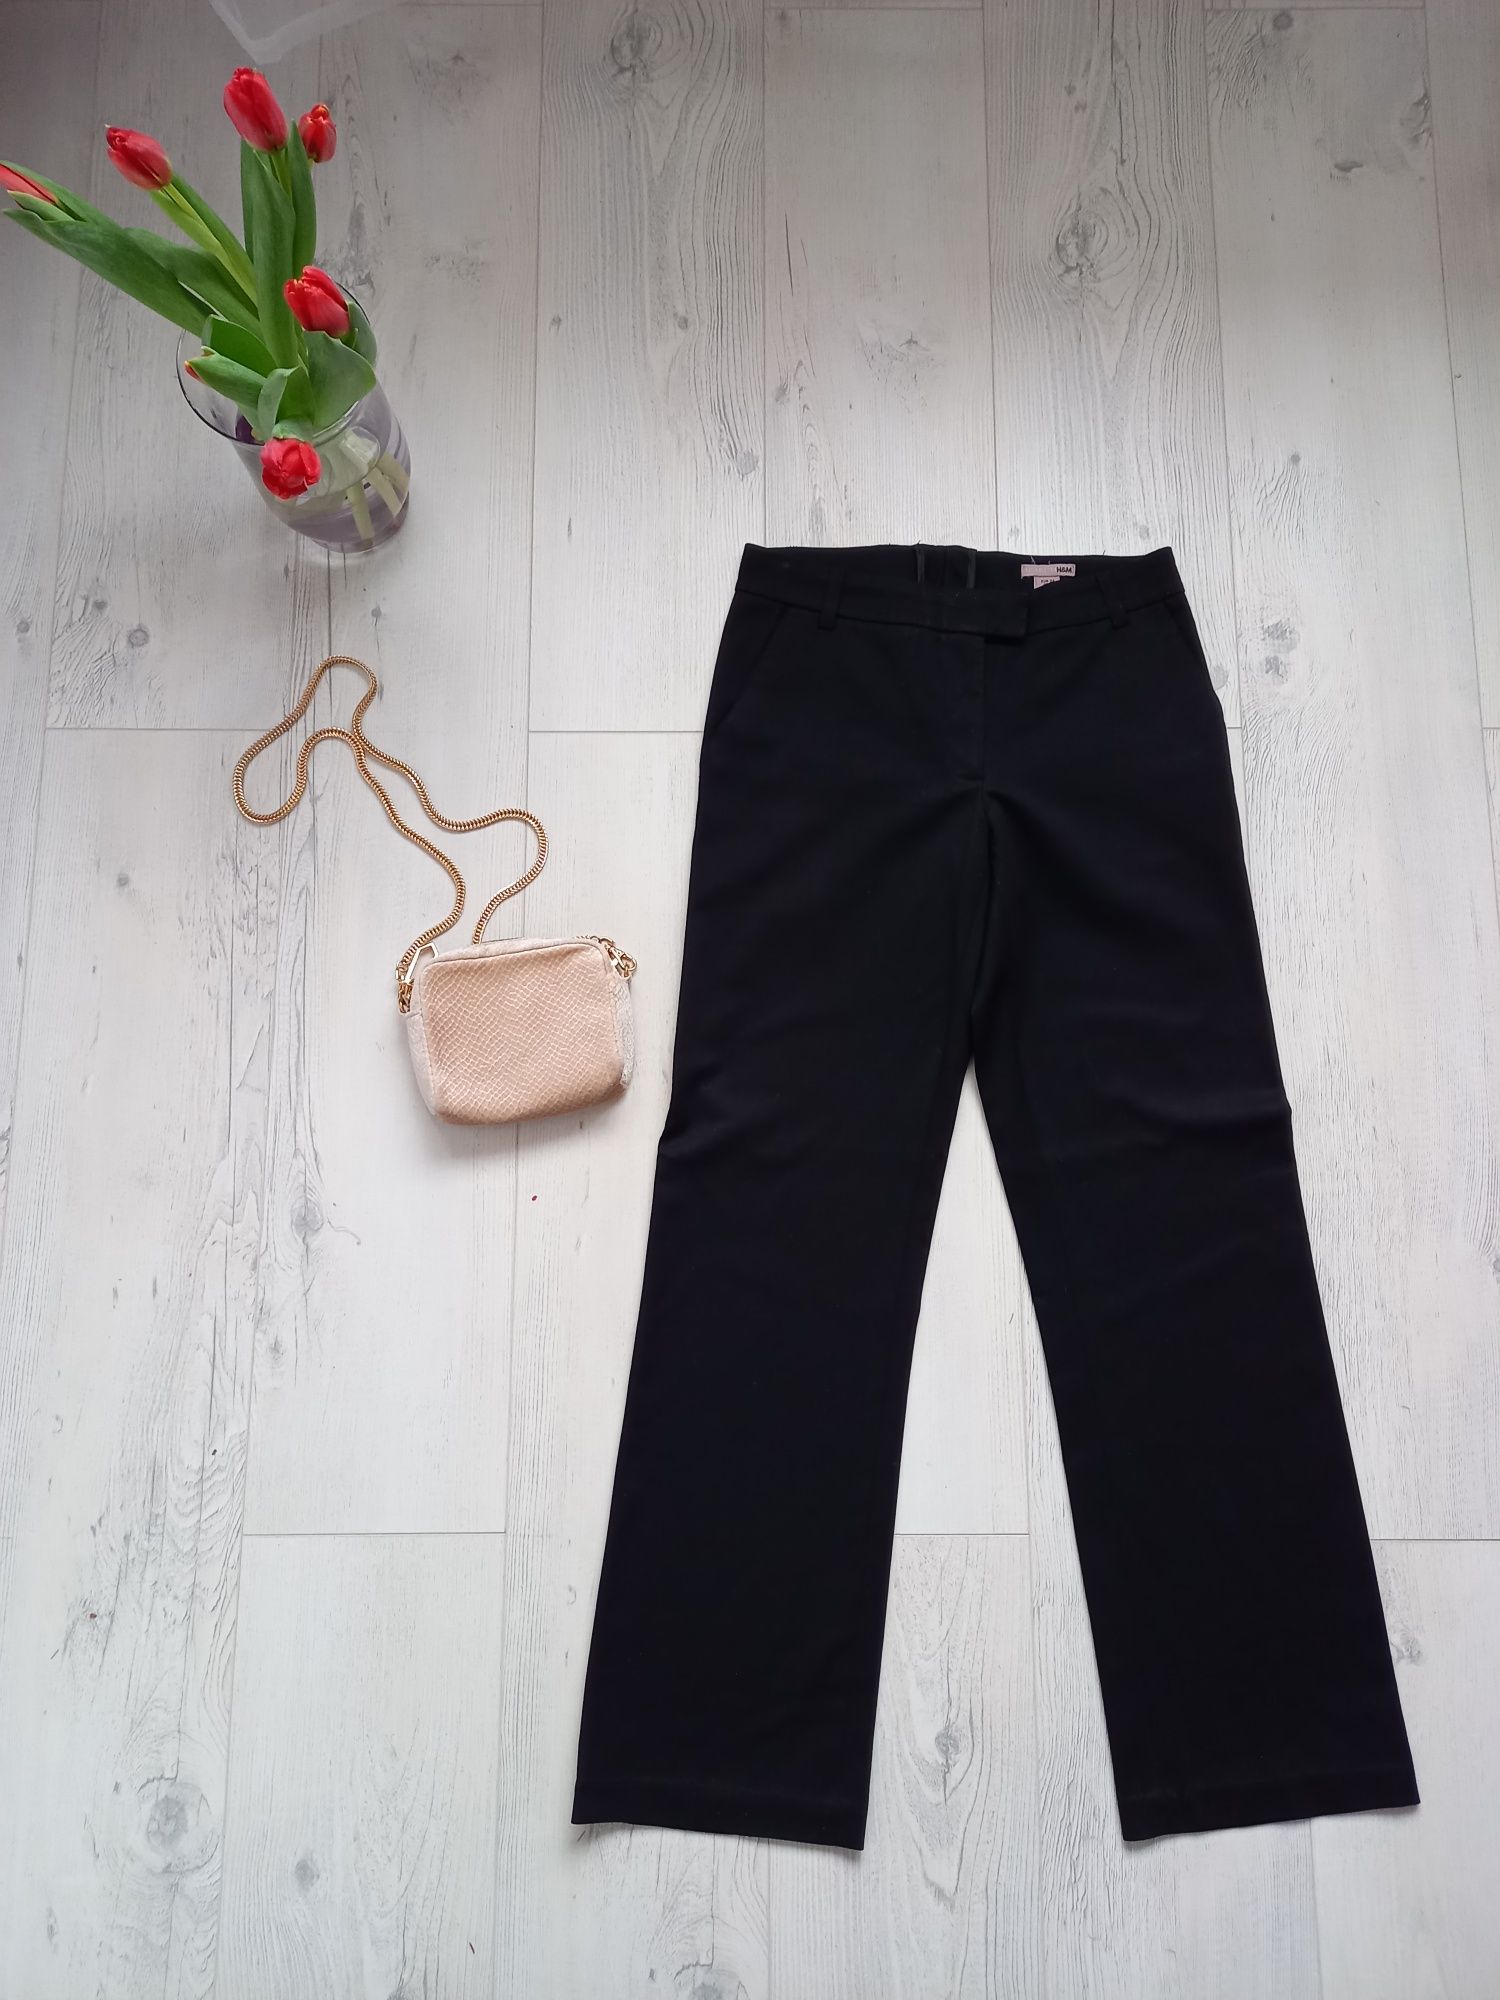 Eleganckie spodnie H&M czarne biurowe z kieszeniami proste klasyczne M